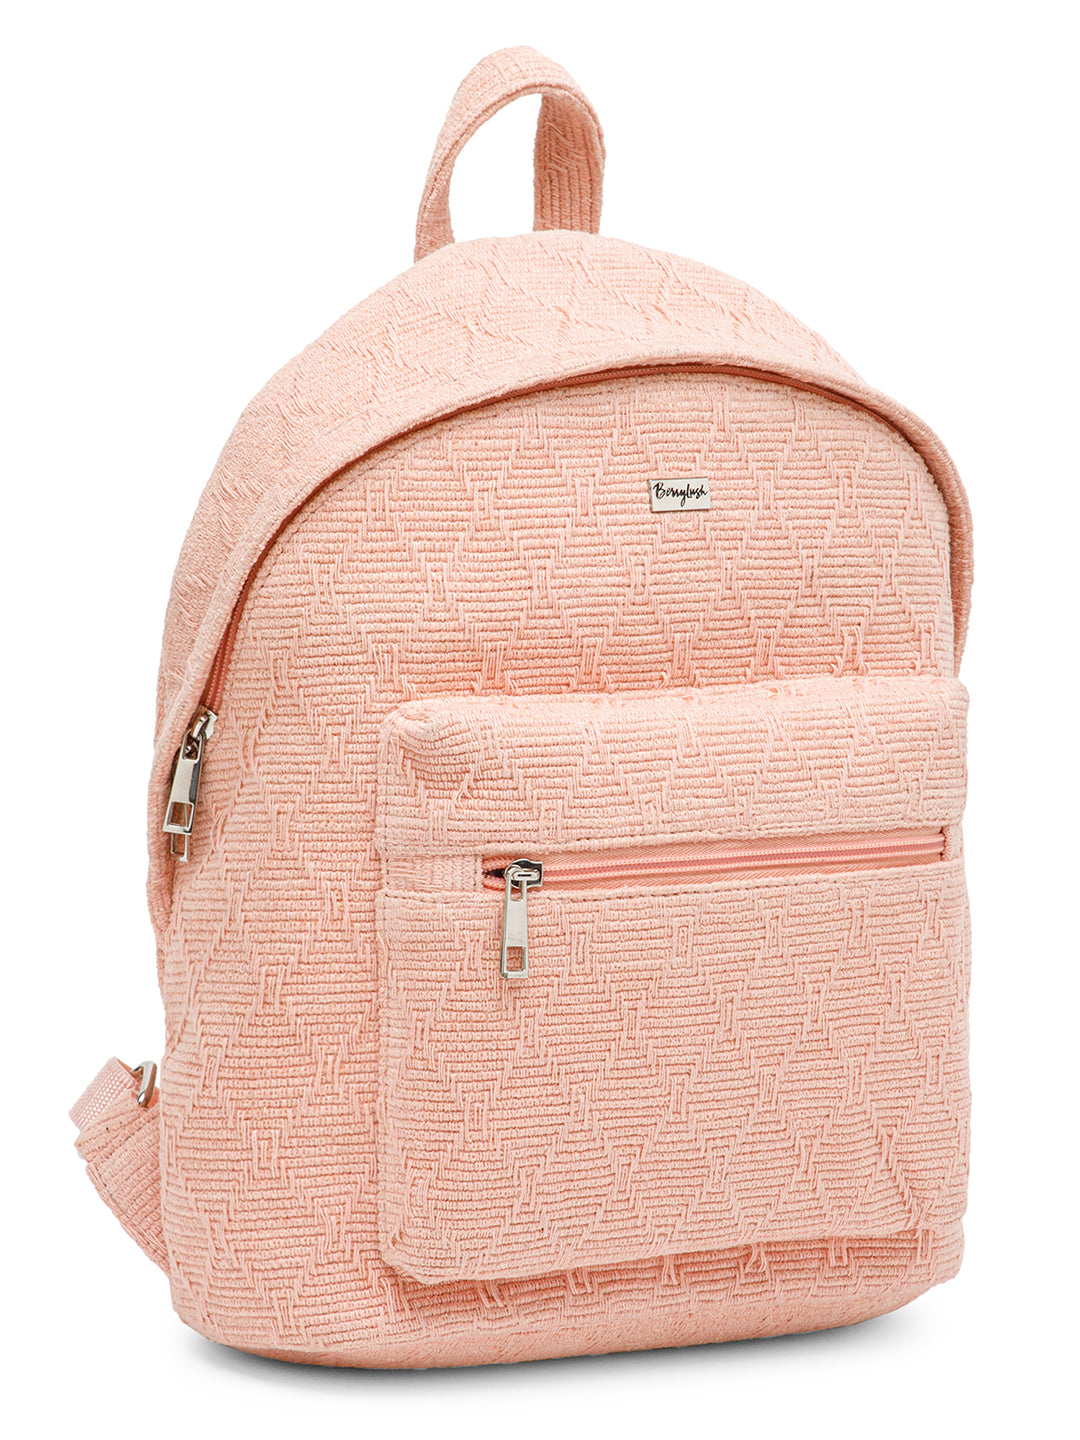 Handmade Cork Backpack - Sobreiro | Eco & Trendy | SacEnGros  i11735cl43m1c2p1l2